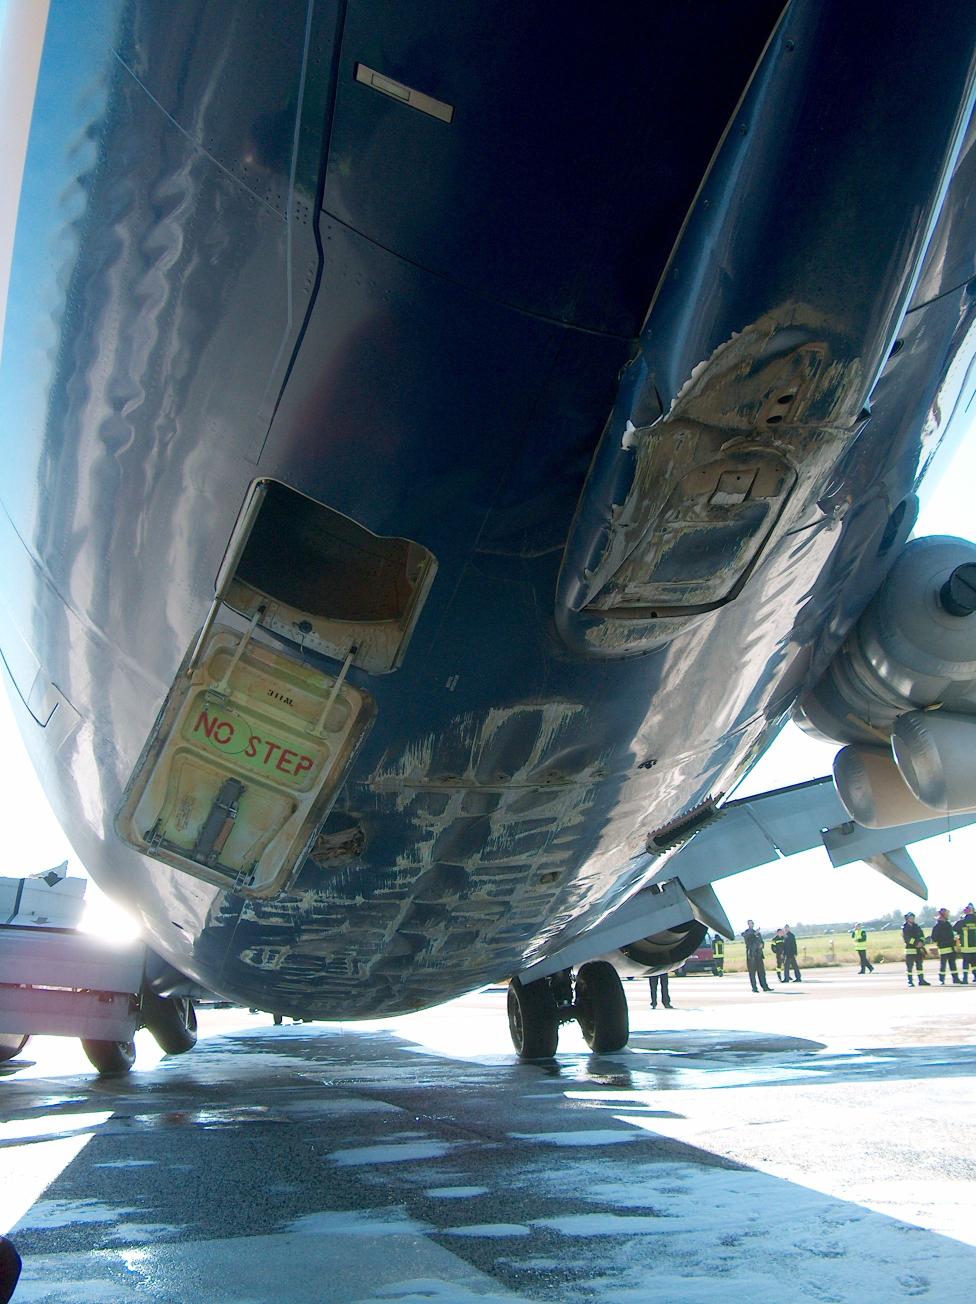 Uszkodzony Boeing linii Ryanair po awaryjnym lądowaniu, źródło: http://www.flightglobal.com